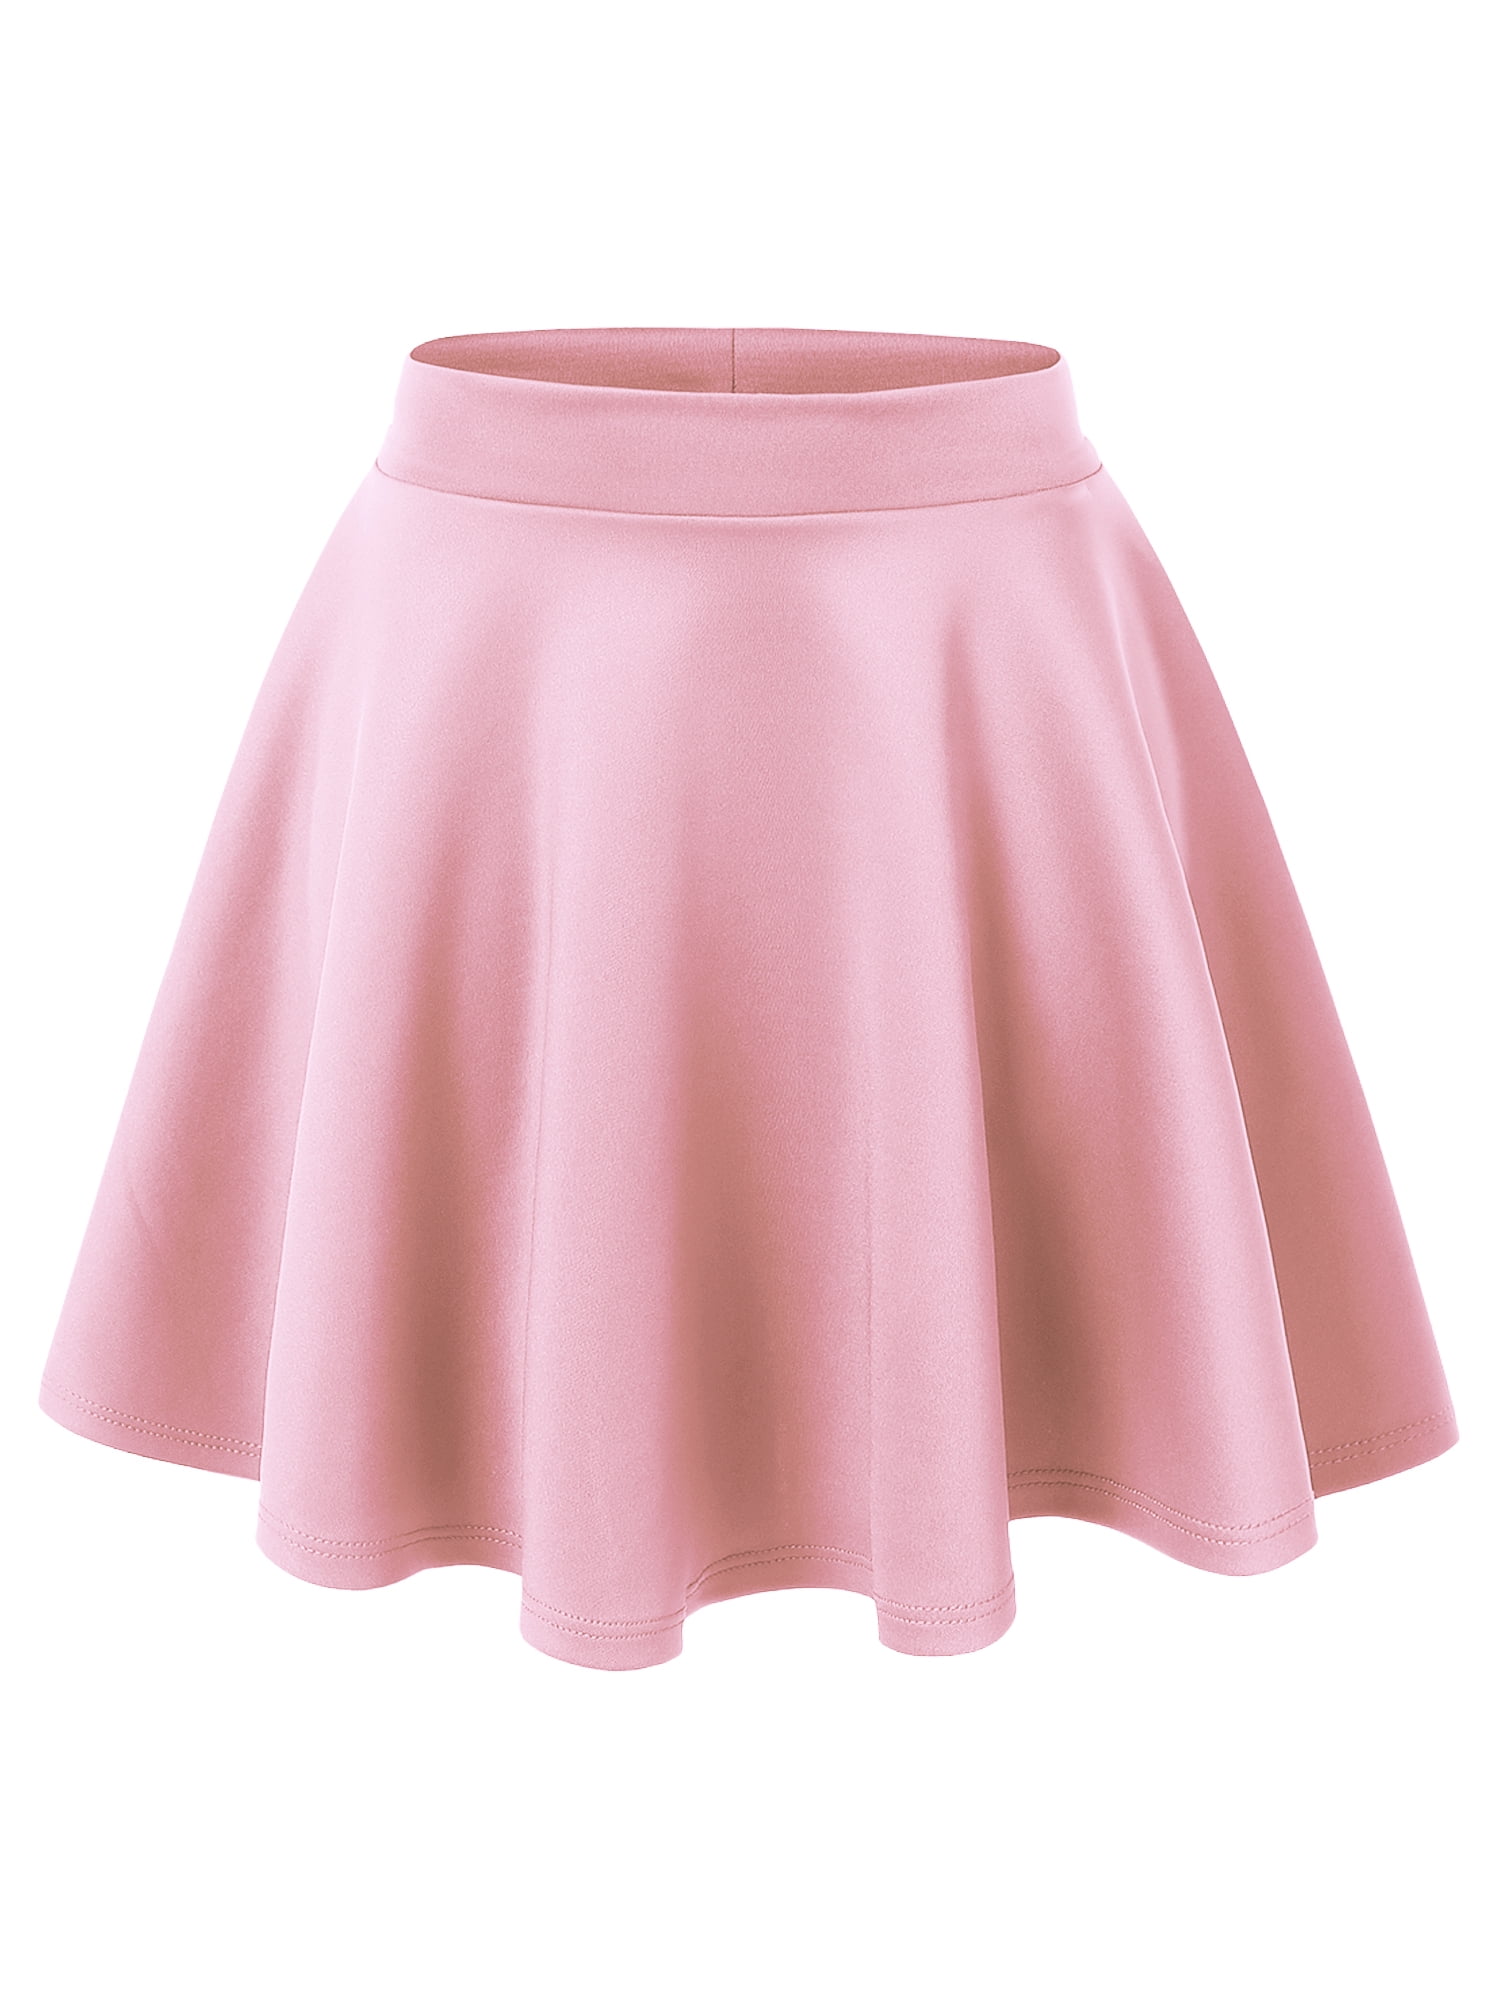 Cute Hot Pink Skirt - Skater Skirt - Pleated Skirt - $61.00 - Lulus-megaelearning.vn